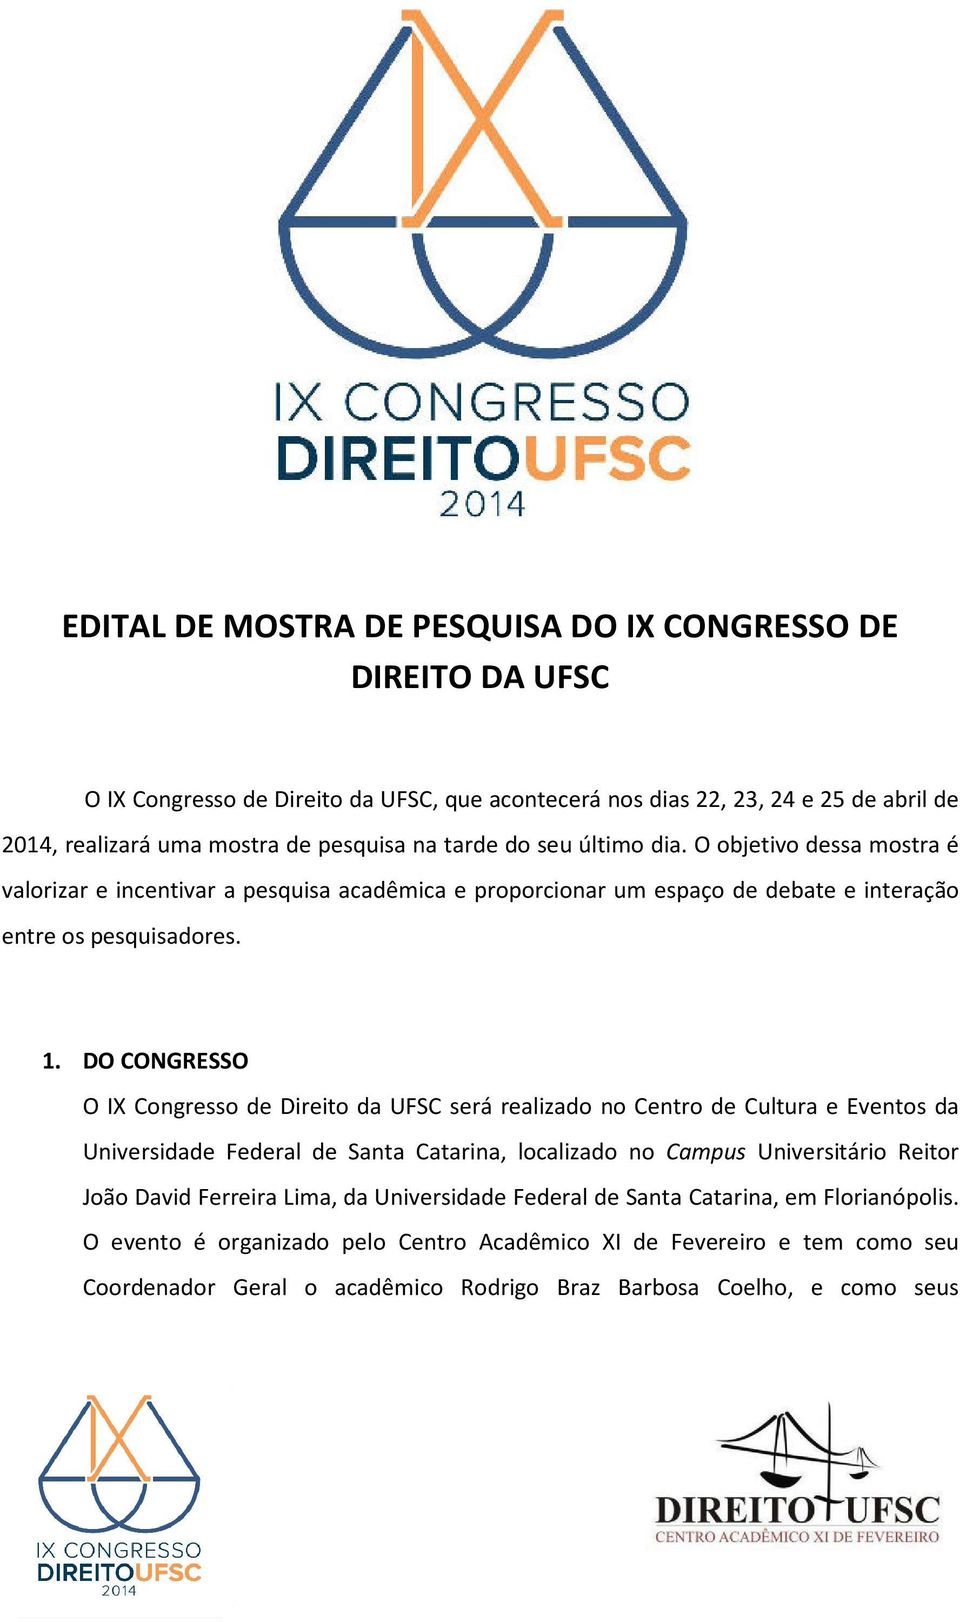 DO CONGRESSO O IX Congresso de Direito da UFSC será realizado no Centro de Cultura e Eventos da Universidade Federal de Santa Catarina, localizado no Campus Universitário Reitor João David